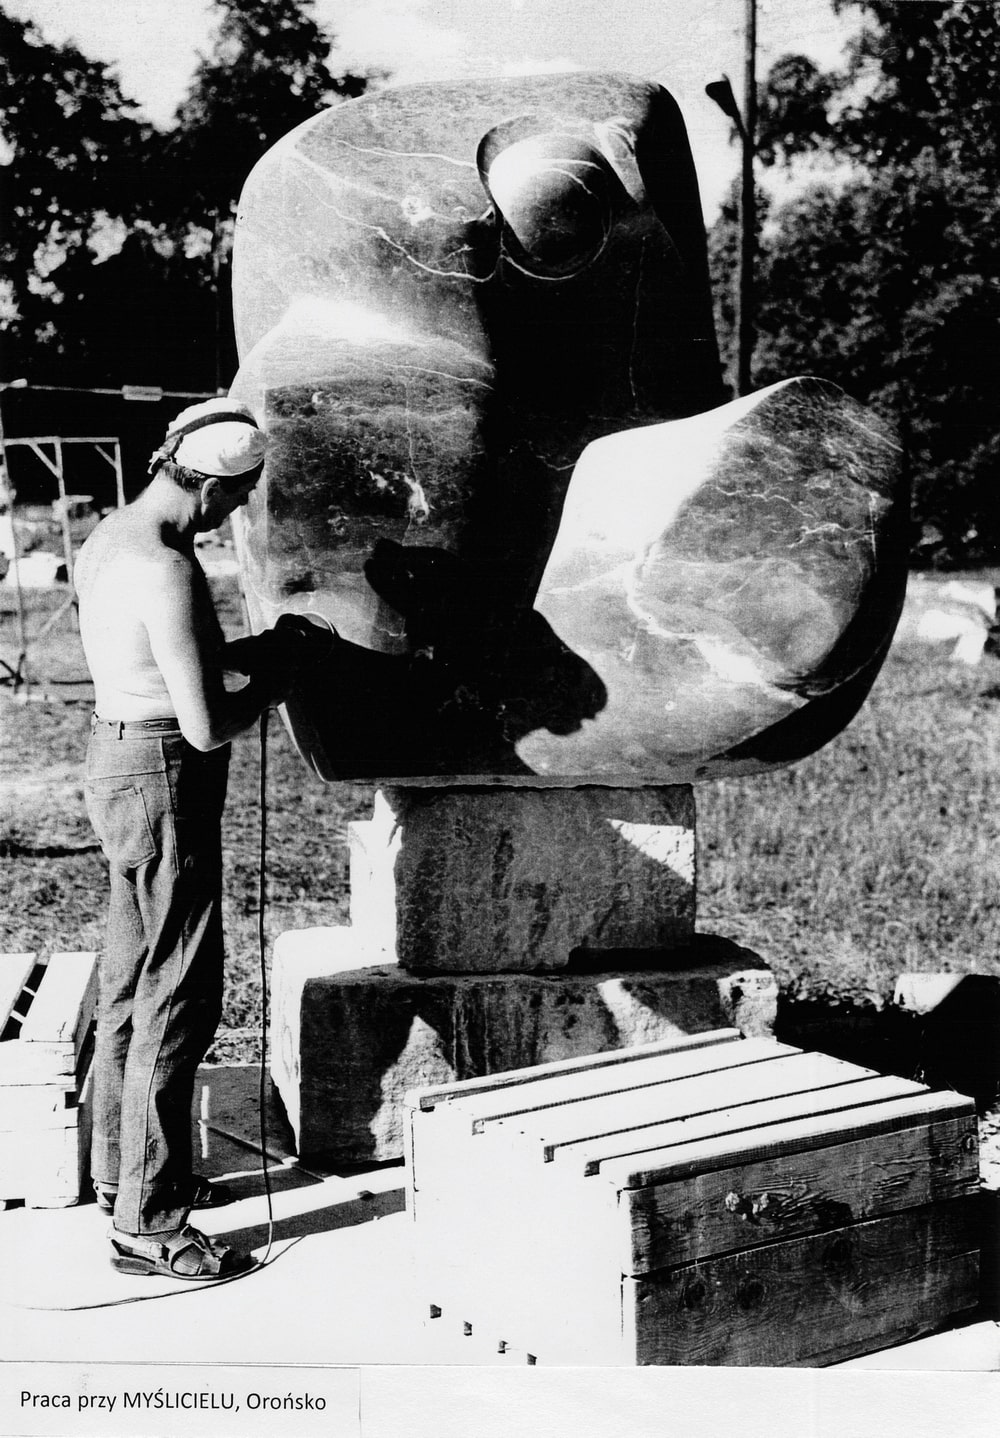 Na zdjęciu widać artystę Kastena podczas pracy nad rzeźbą. Jest ciepło. Artysta pracuje na świeżym powietrzu w plenerze. Rzeźba, którą robi, jest wielkości dorosłego człowieka. Rzeźba przedstawia postać, która siedzi, a głowę ma pochyloną. Postać ma syntetyczne kształty. Zdjęcie jest czarno-białe.